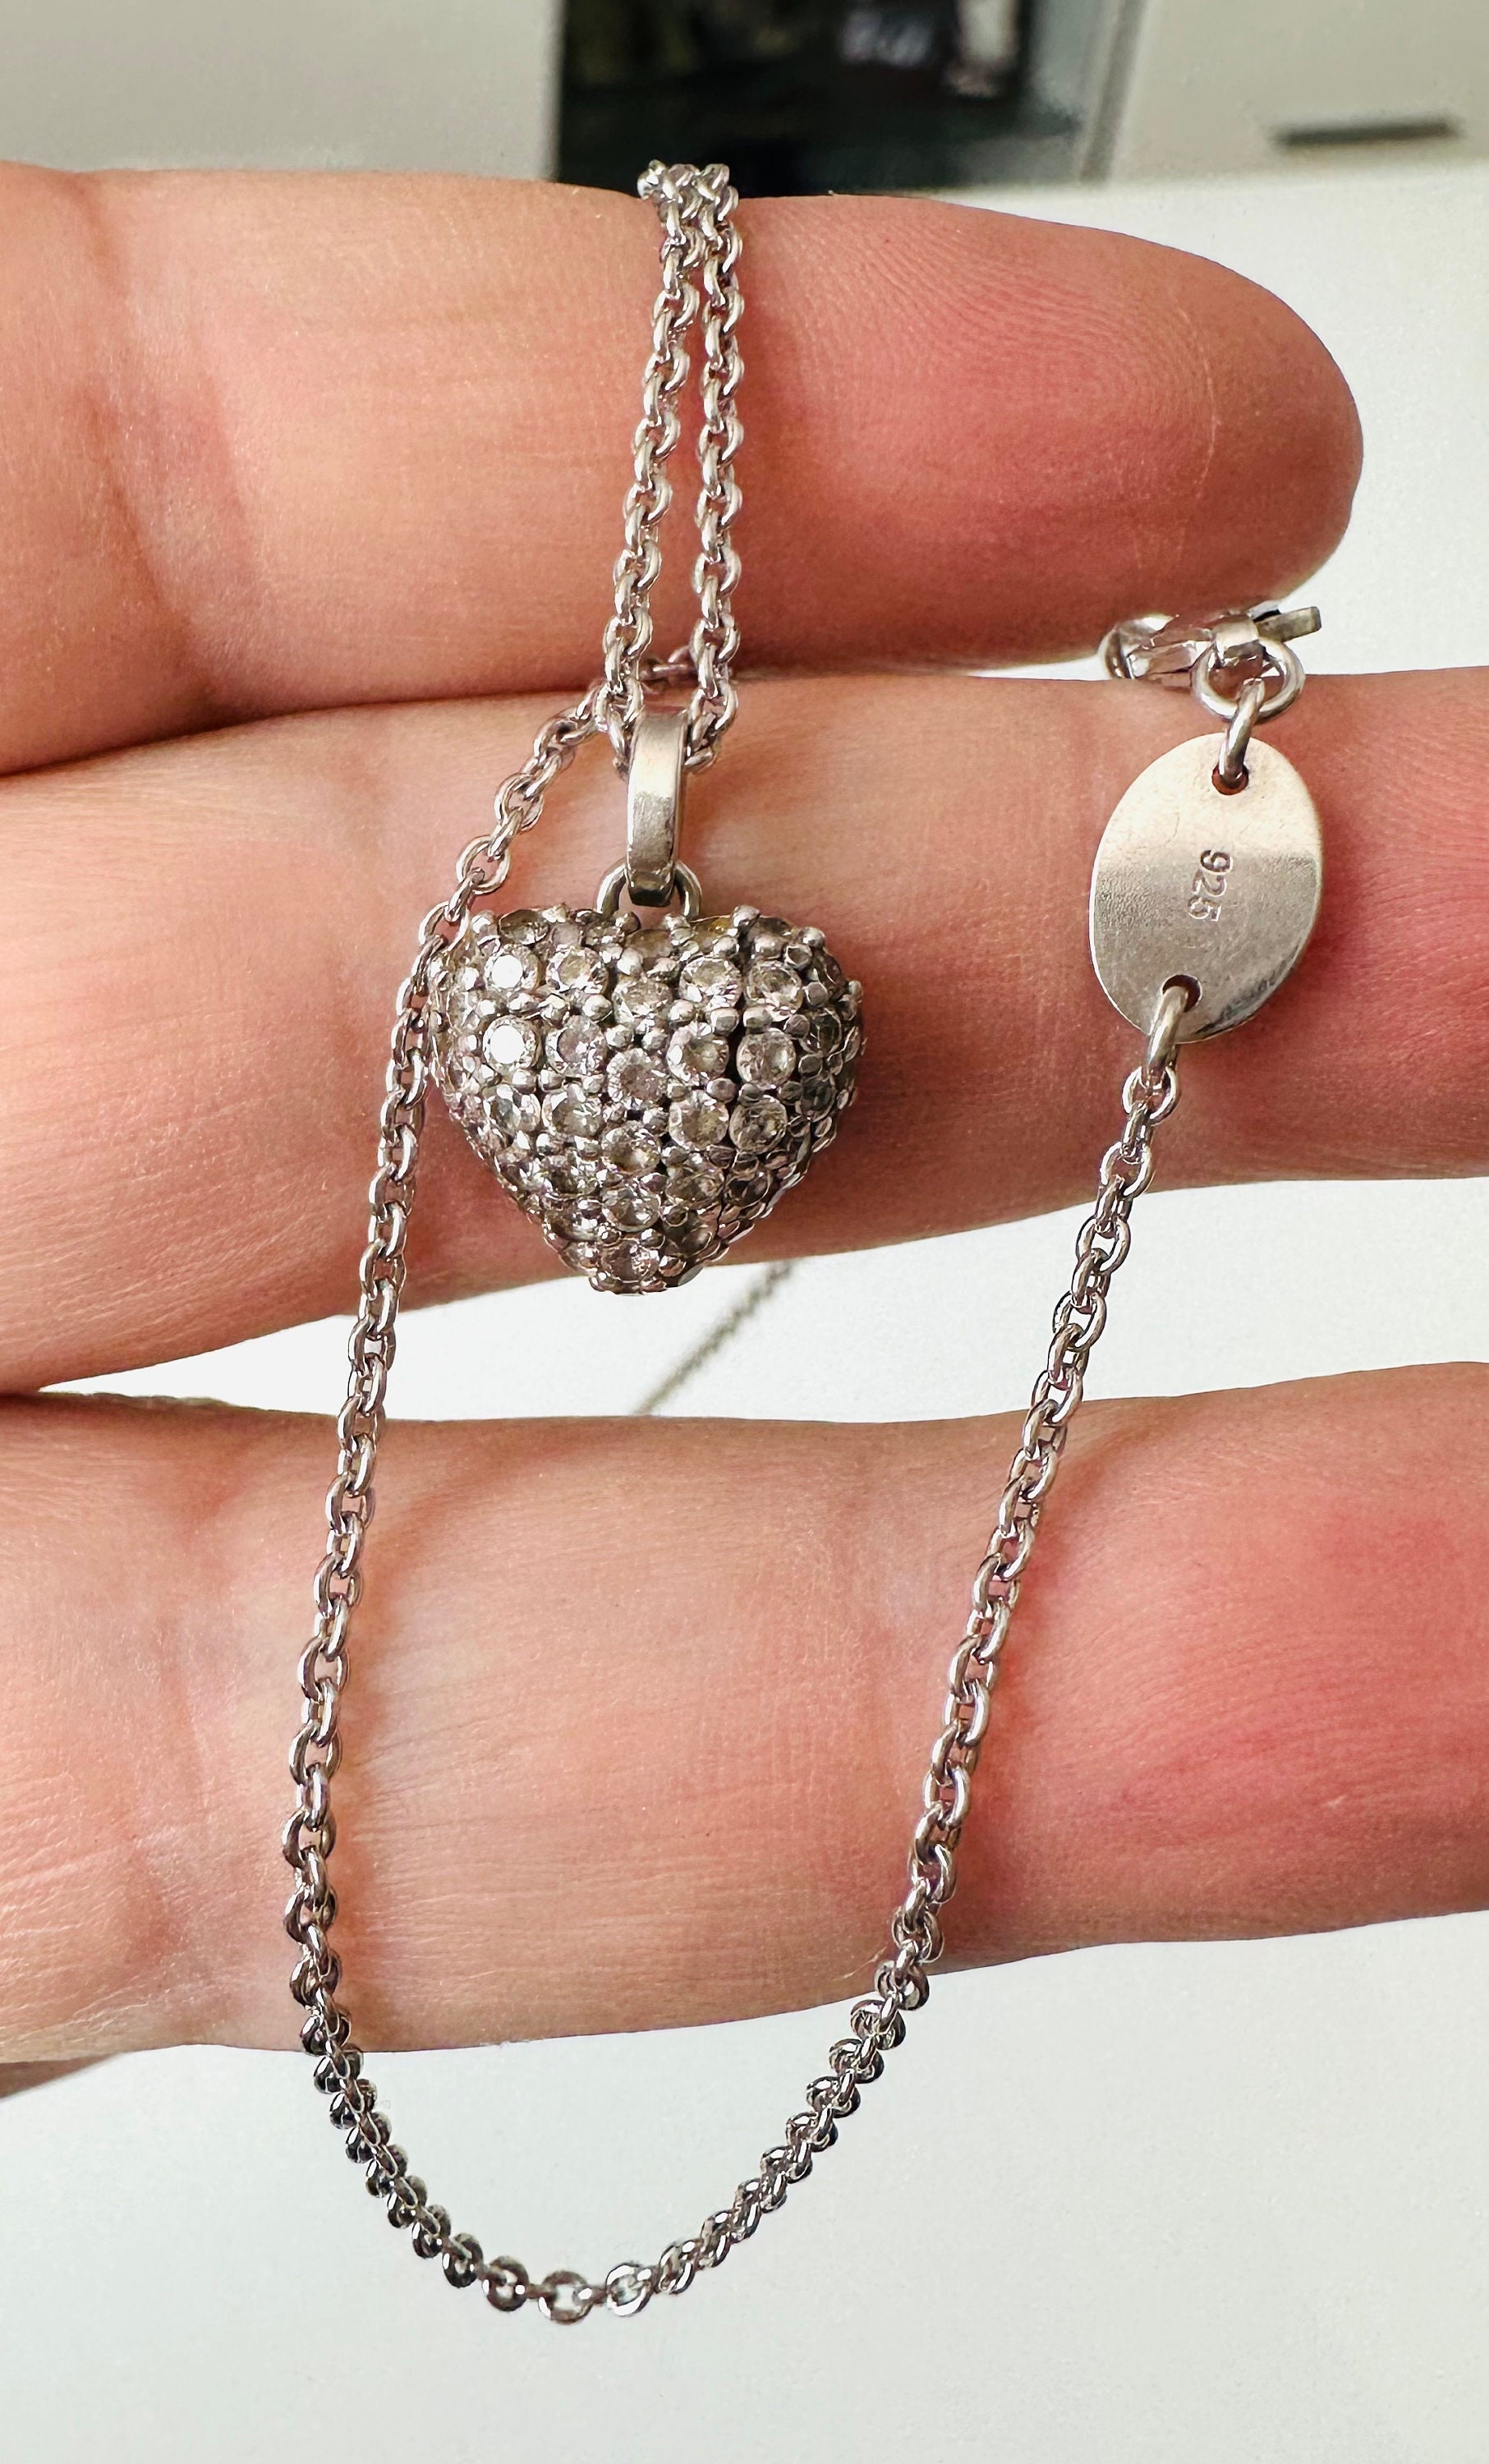 Schöne wertvolle Designger Halskette von Christ mit Herz Anhänger 925 Silber  und Zirkonia Steinen.